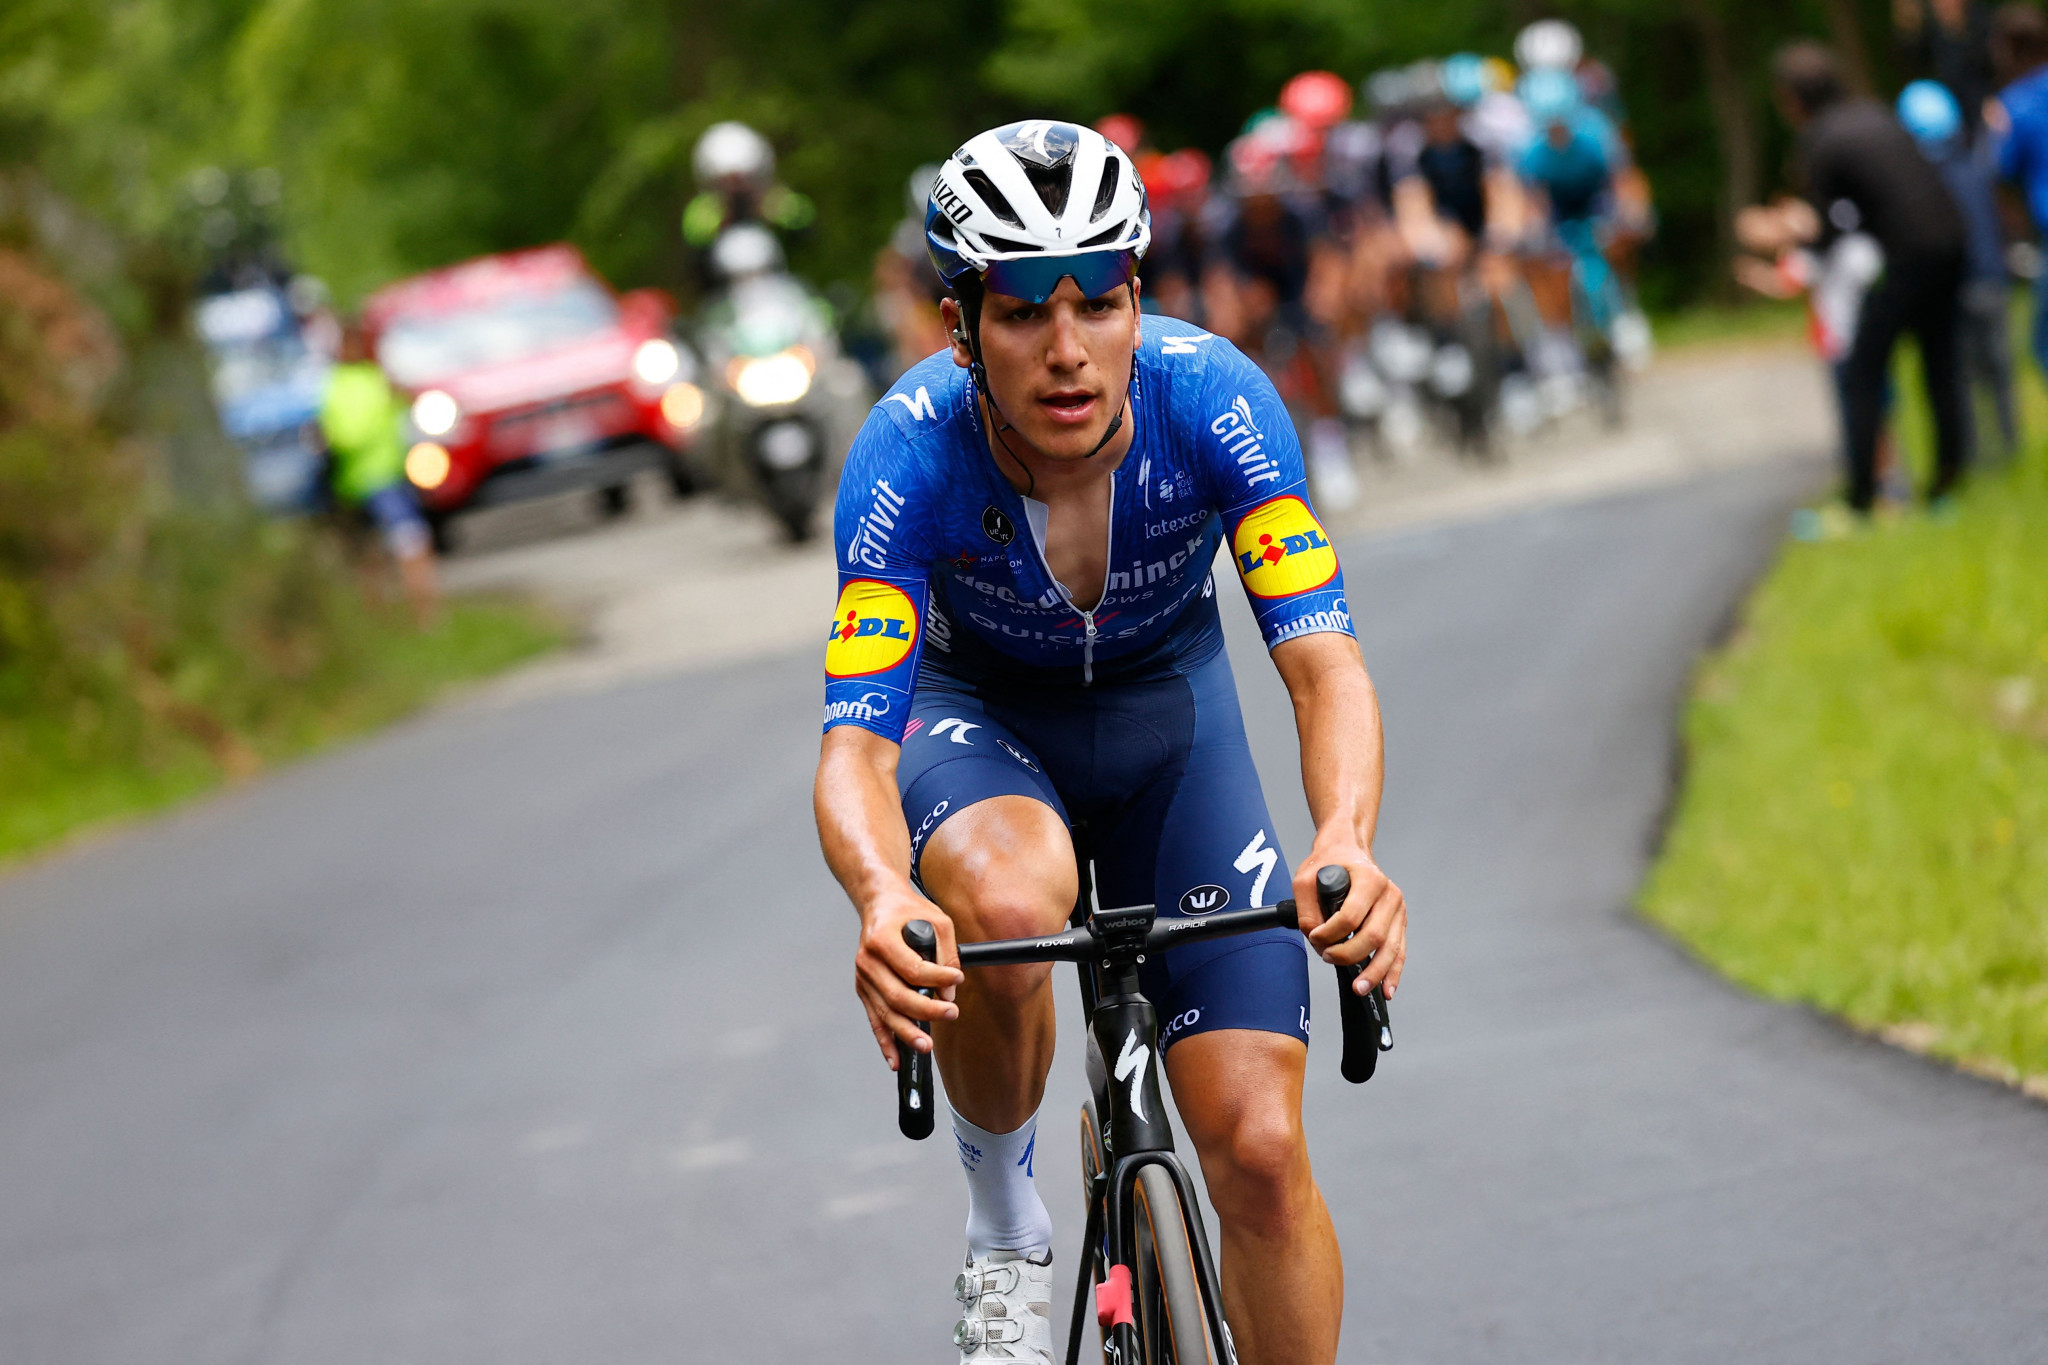 João Almeida won the 2021 Tour de Pologne ©Getty Images